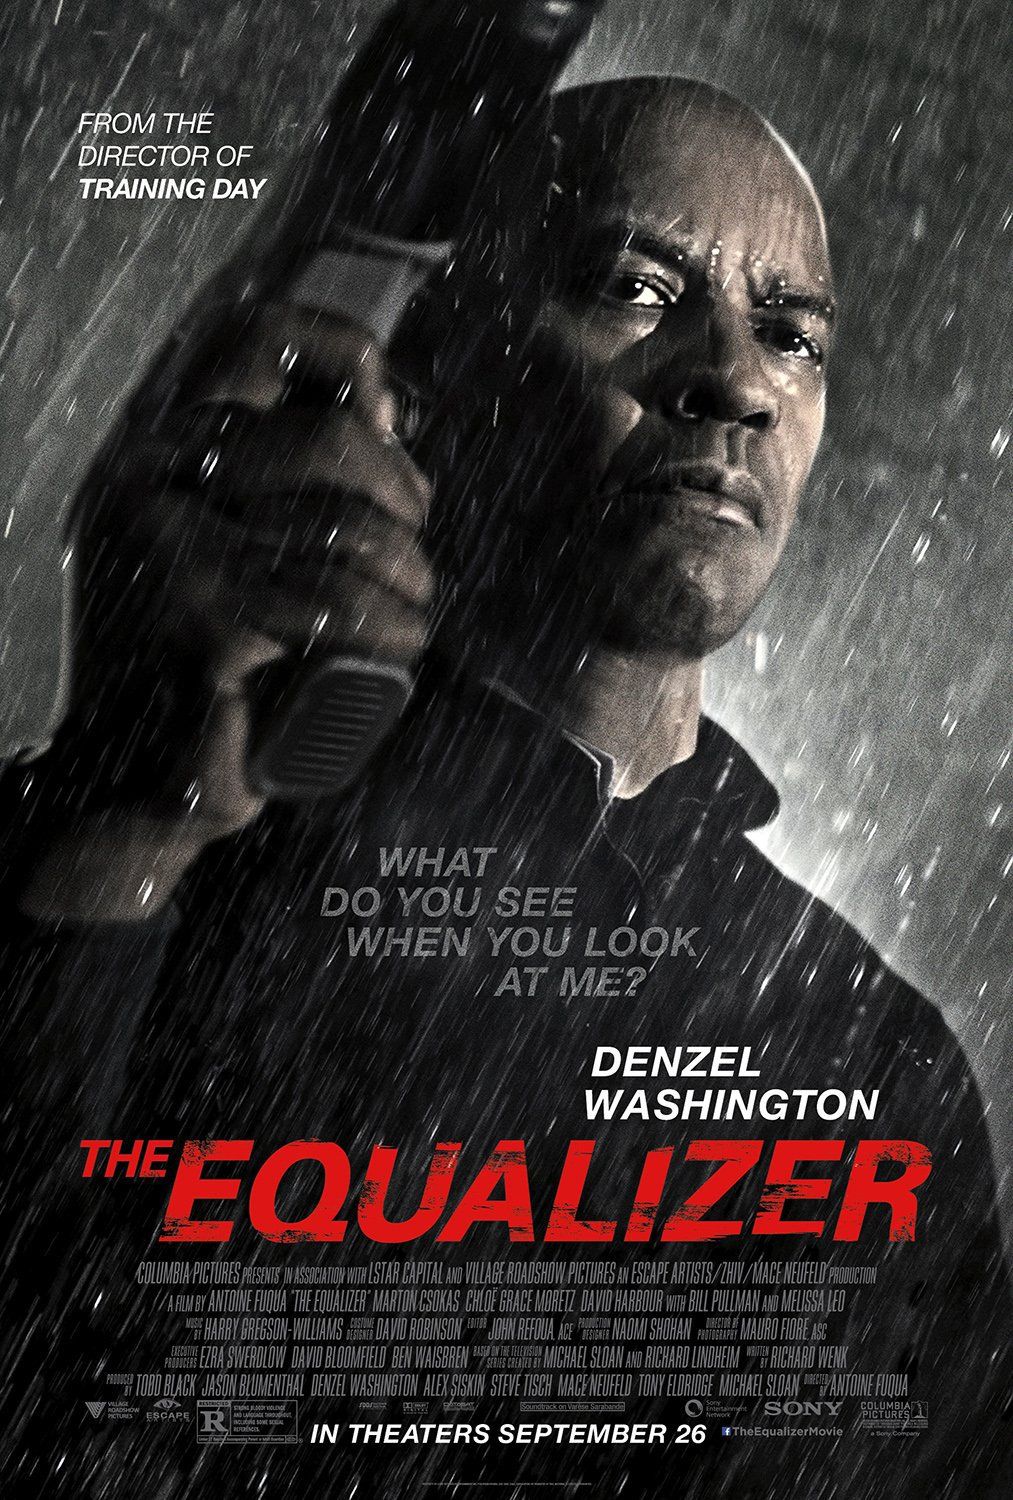 Denzel Washington in The Equalizer 3